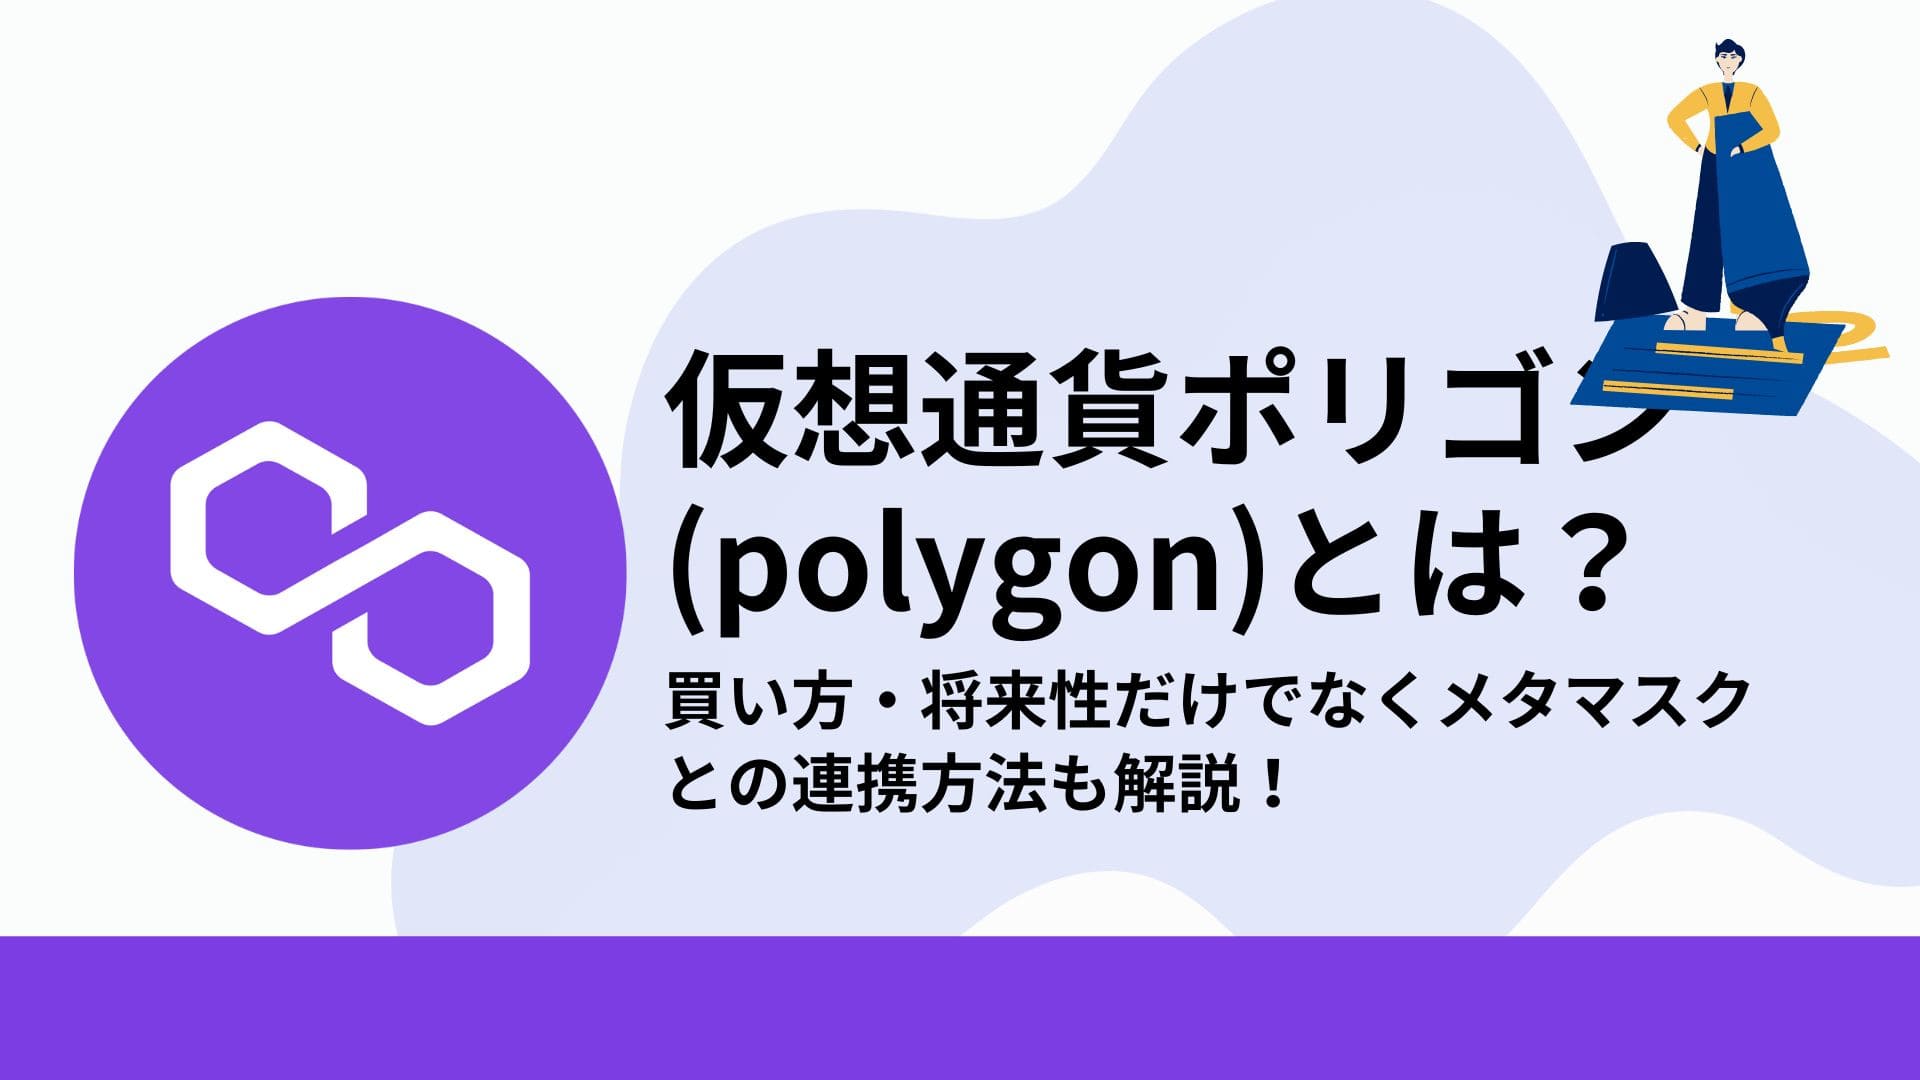 Polygon(ポリゴン)_仮想通貨_アイキャッチ